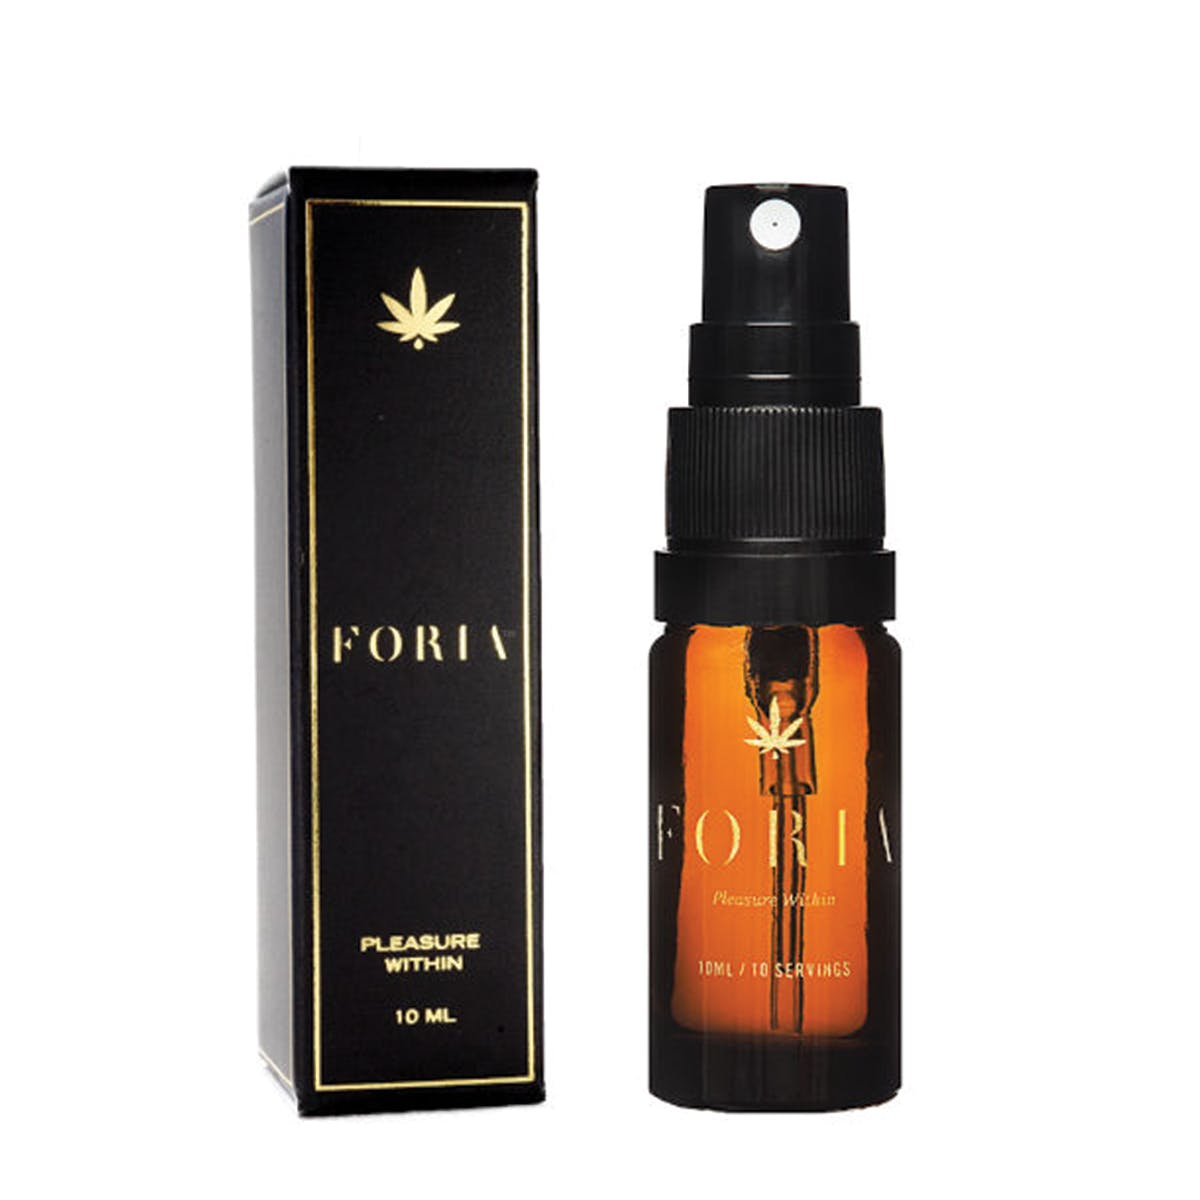 marijuana-dispensaries-the-relief-collective-in-midtown-foria-pleasure-10ml-spray-bottle